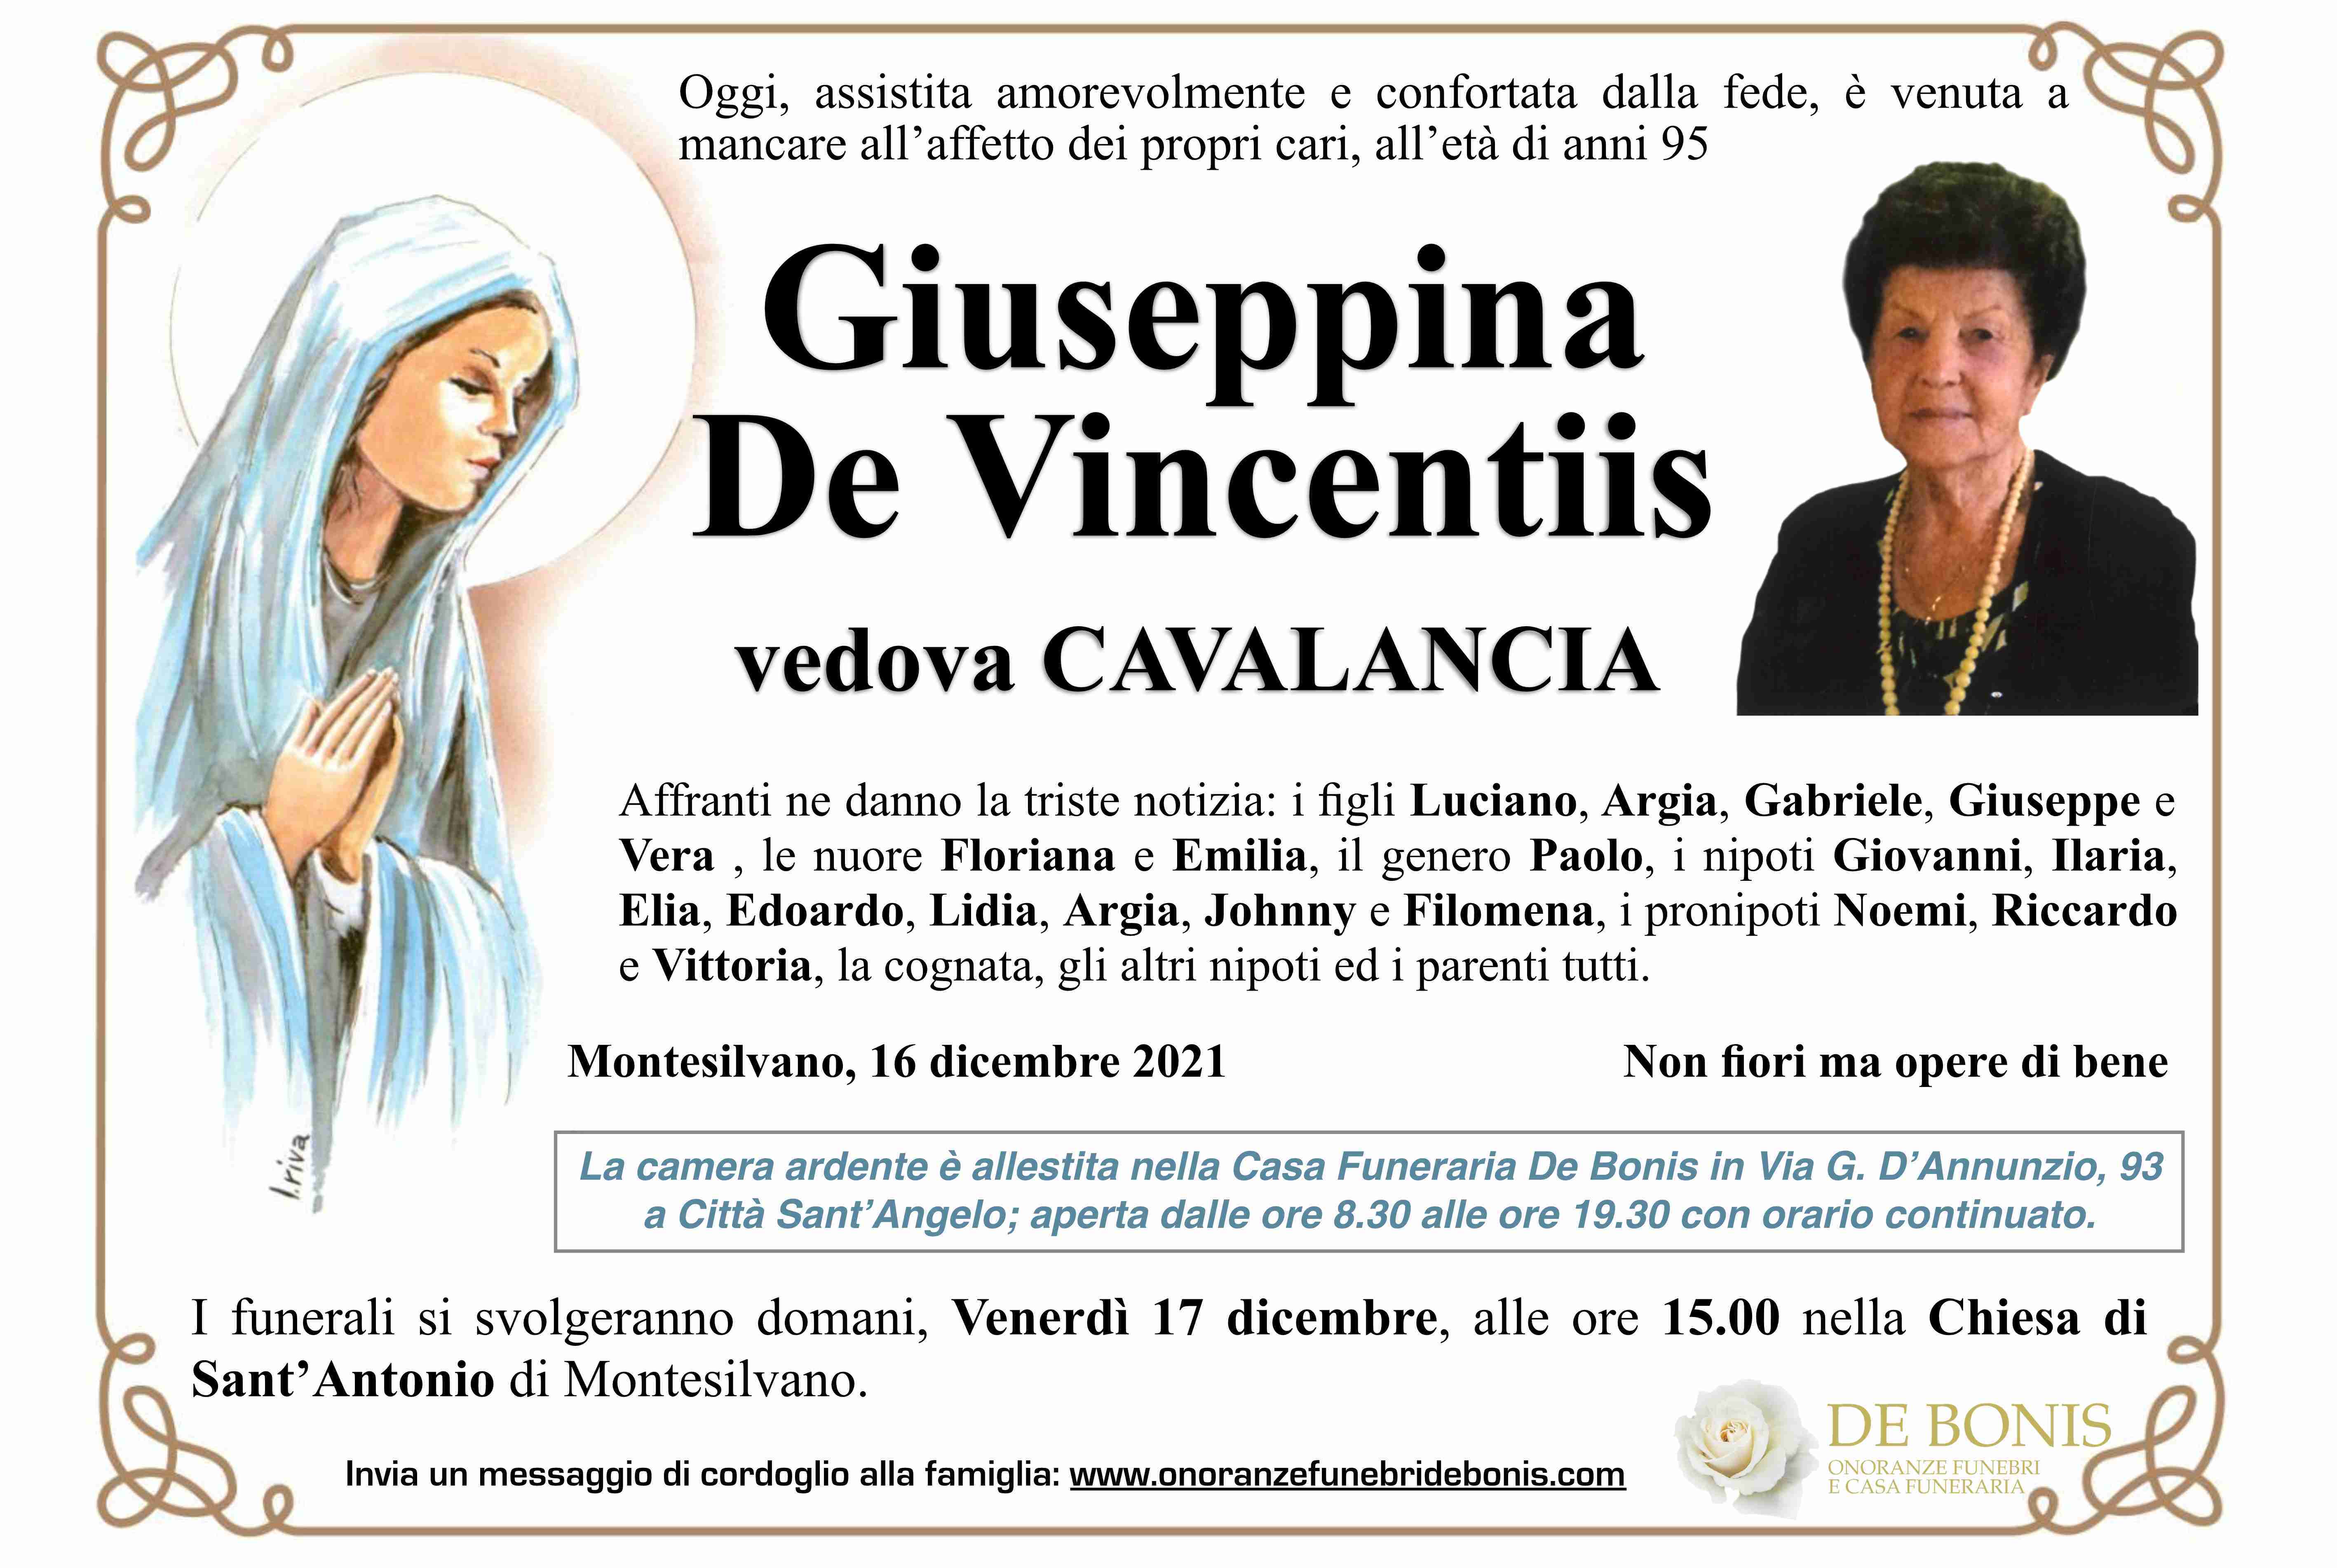 Giuseppina De Vincentiis